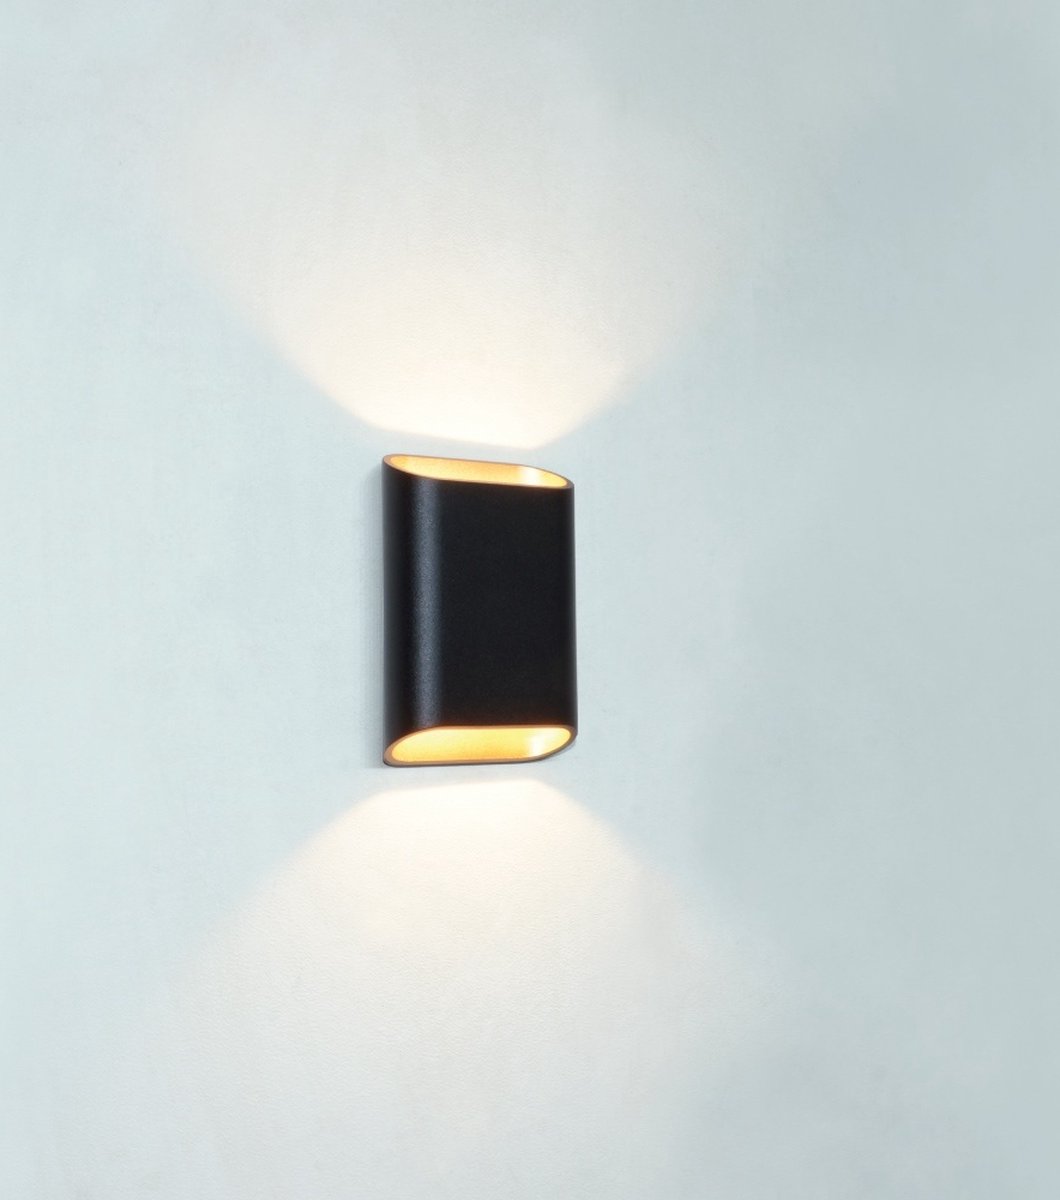 Wandlamp Diaz-S Zwart/Mat Goud - hoogte 15cm - LED 2x3W 2700K 2x30lm - IP54 - Dimbaar > wandlamp binnen zwart goud | wandlamp buiten zwart goud | wandlamp zwart goud | buitenlamp zwart goud | muurlamp zwart goud | led lamp zwart goud